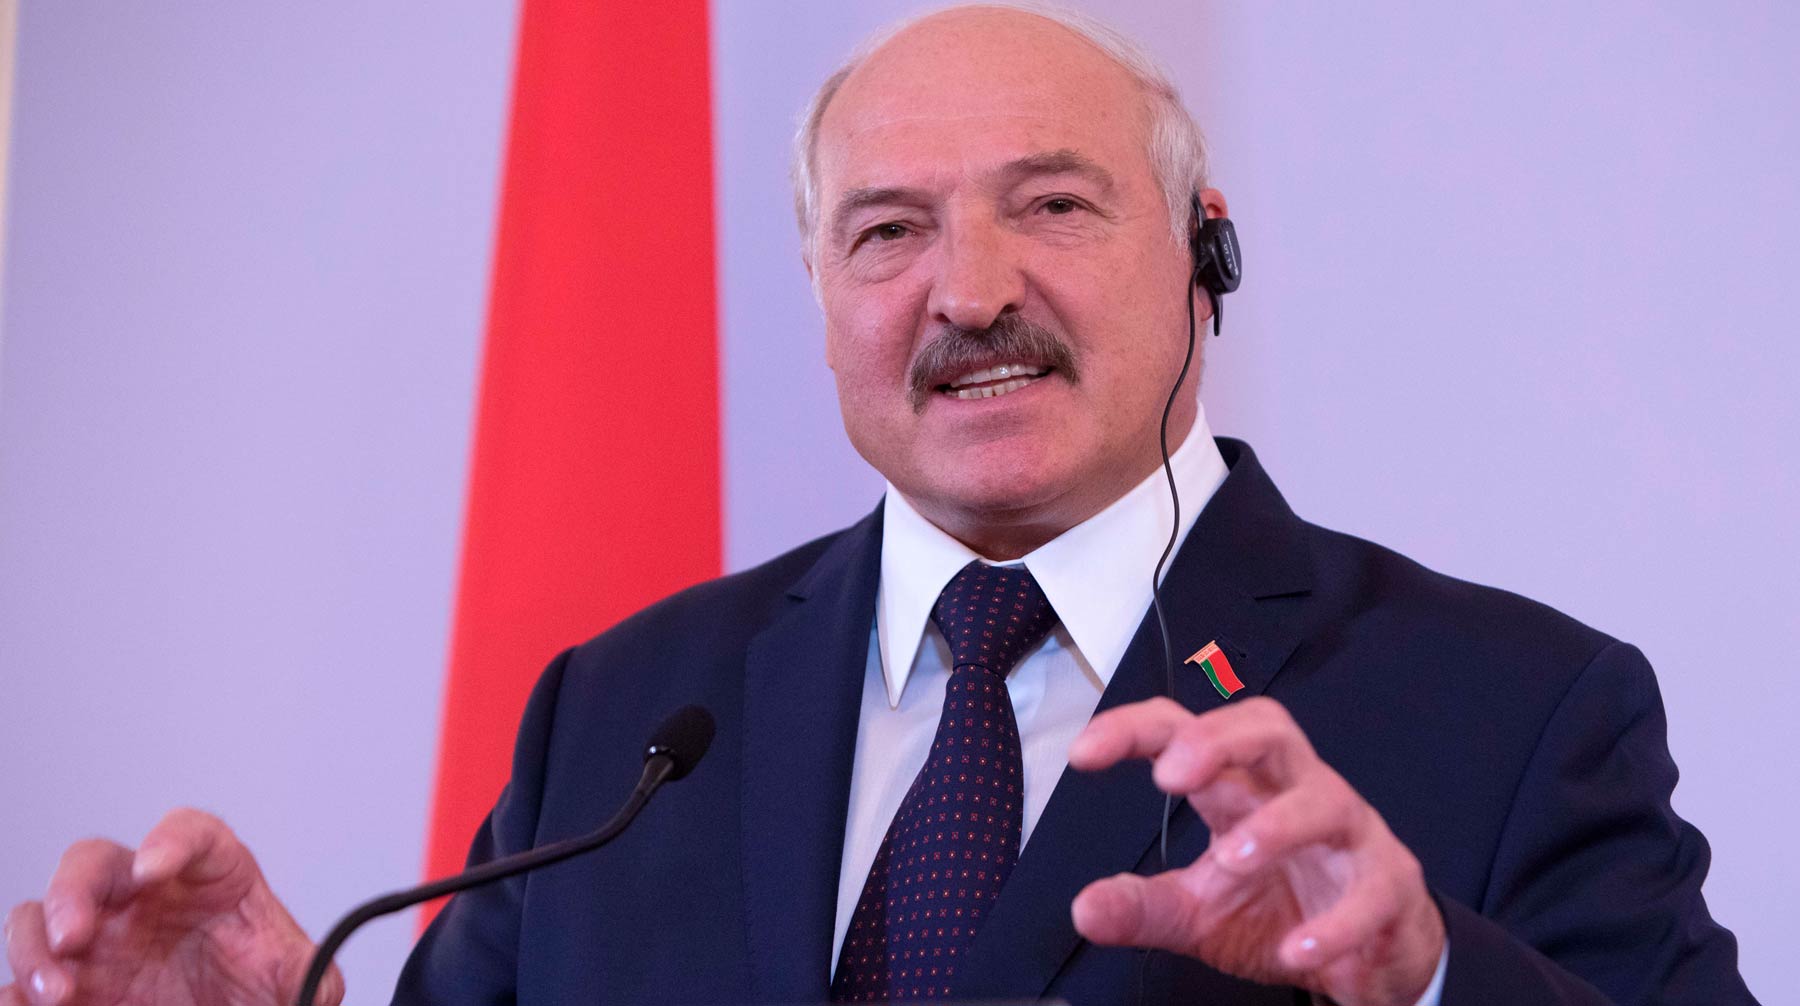 Западные страны «забыли, что такое Беларусь», заявил политик Фото: © Global Look Press / Alex Halada